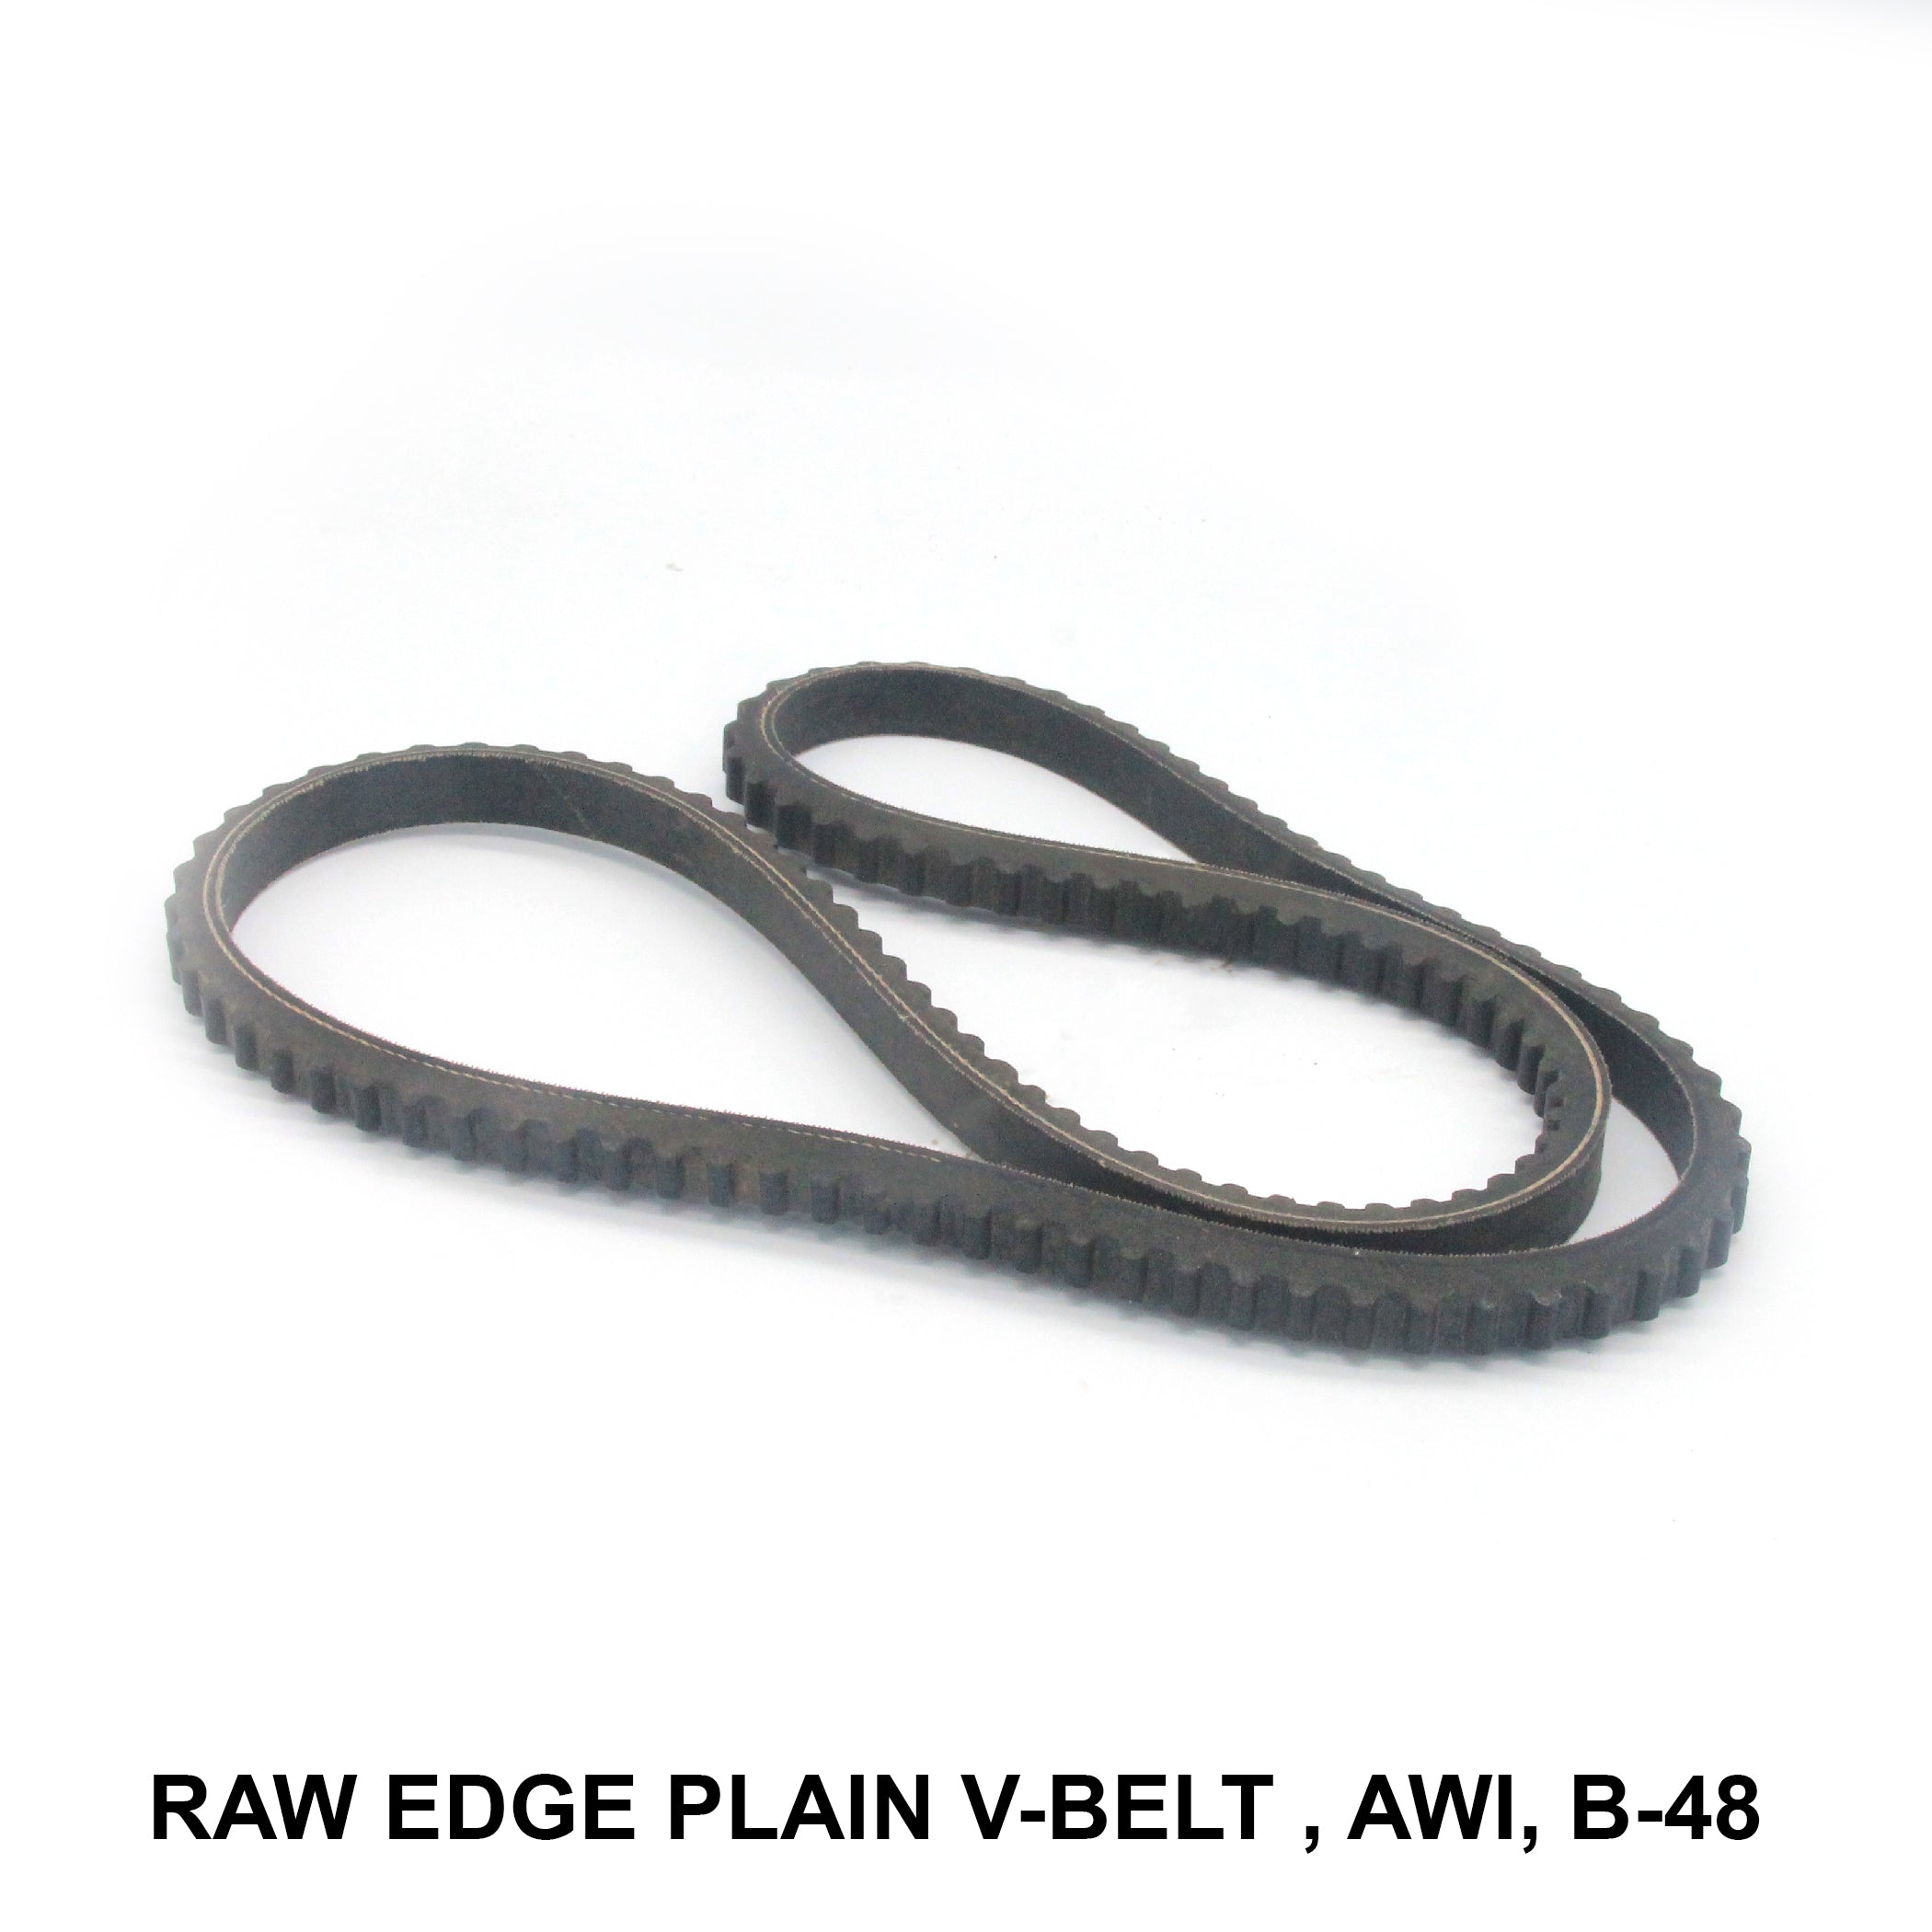 Raw Edge Plain V-belt (REMF), AWI, B-48 (006608)